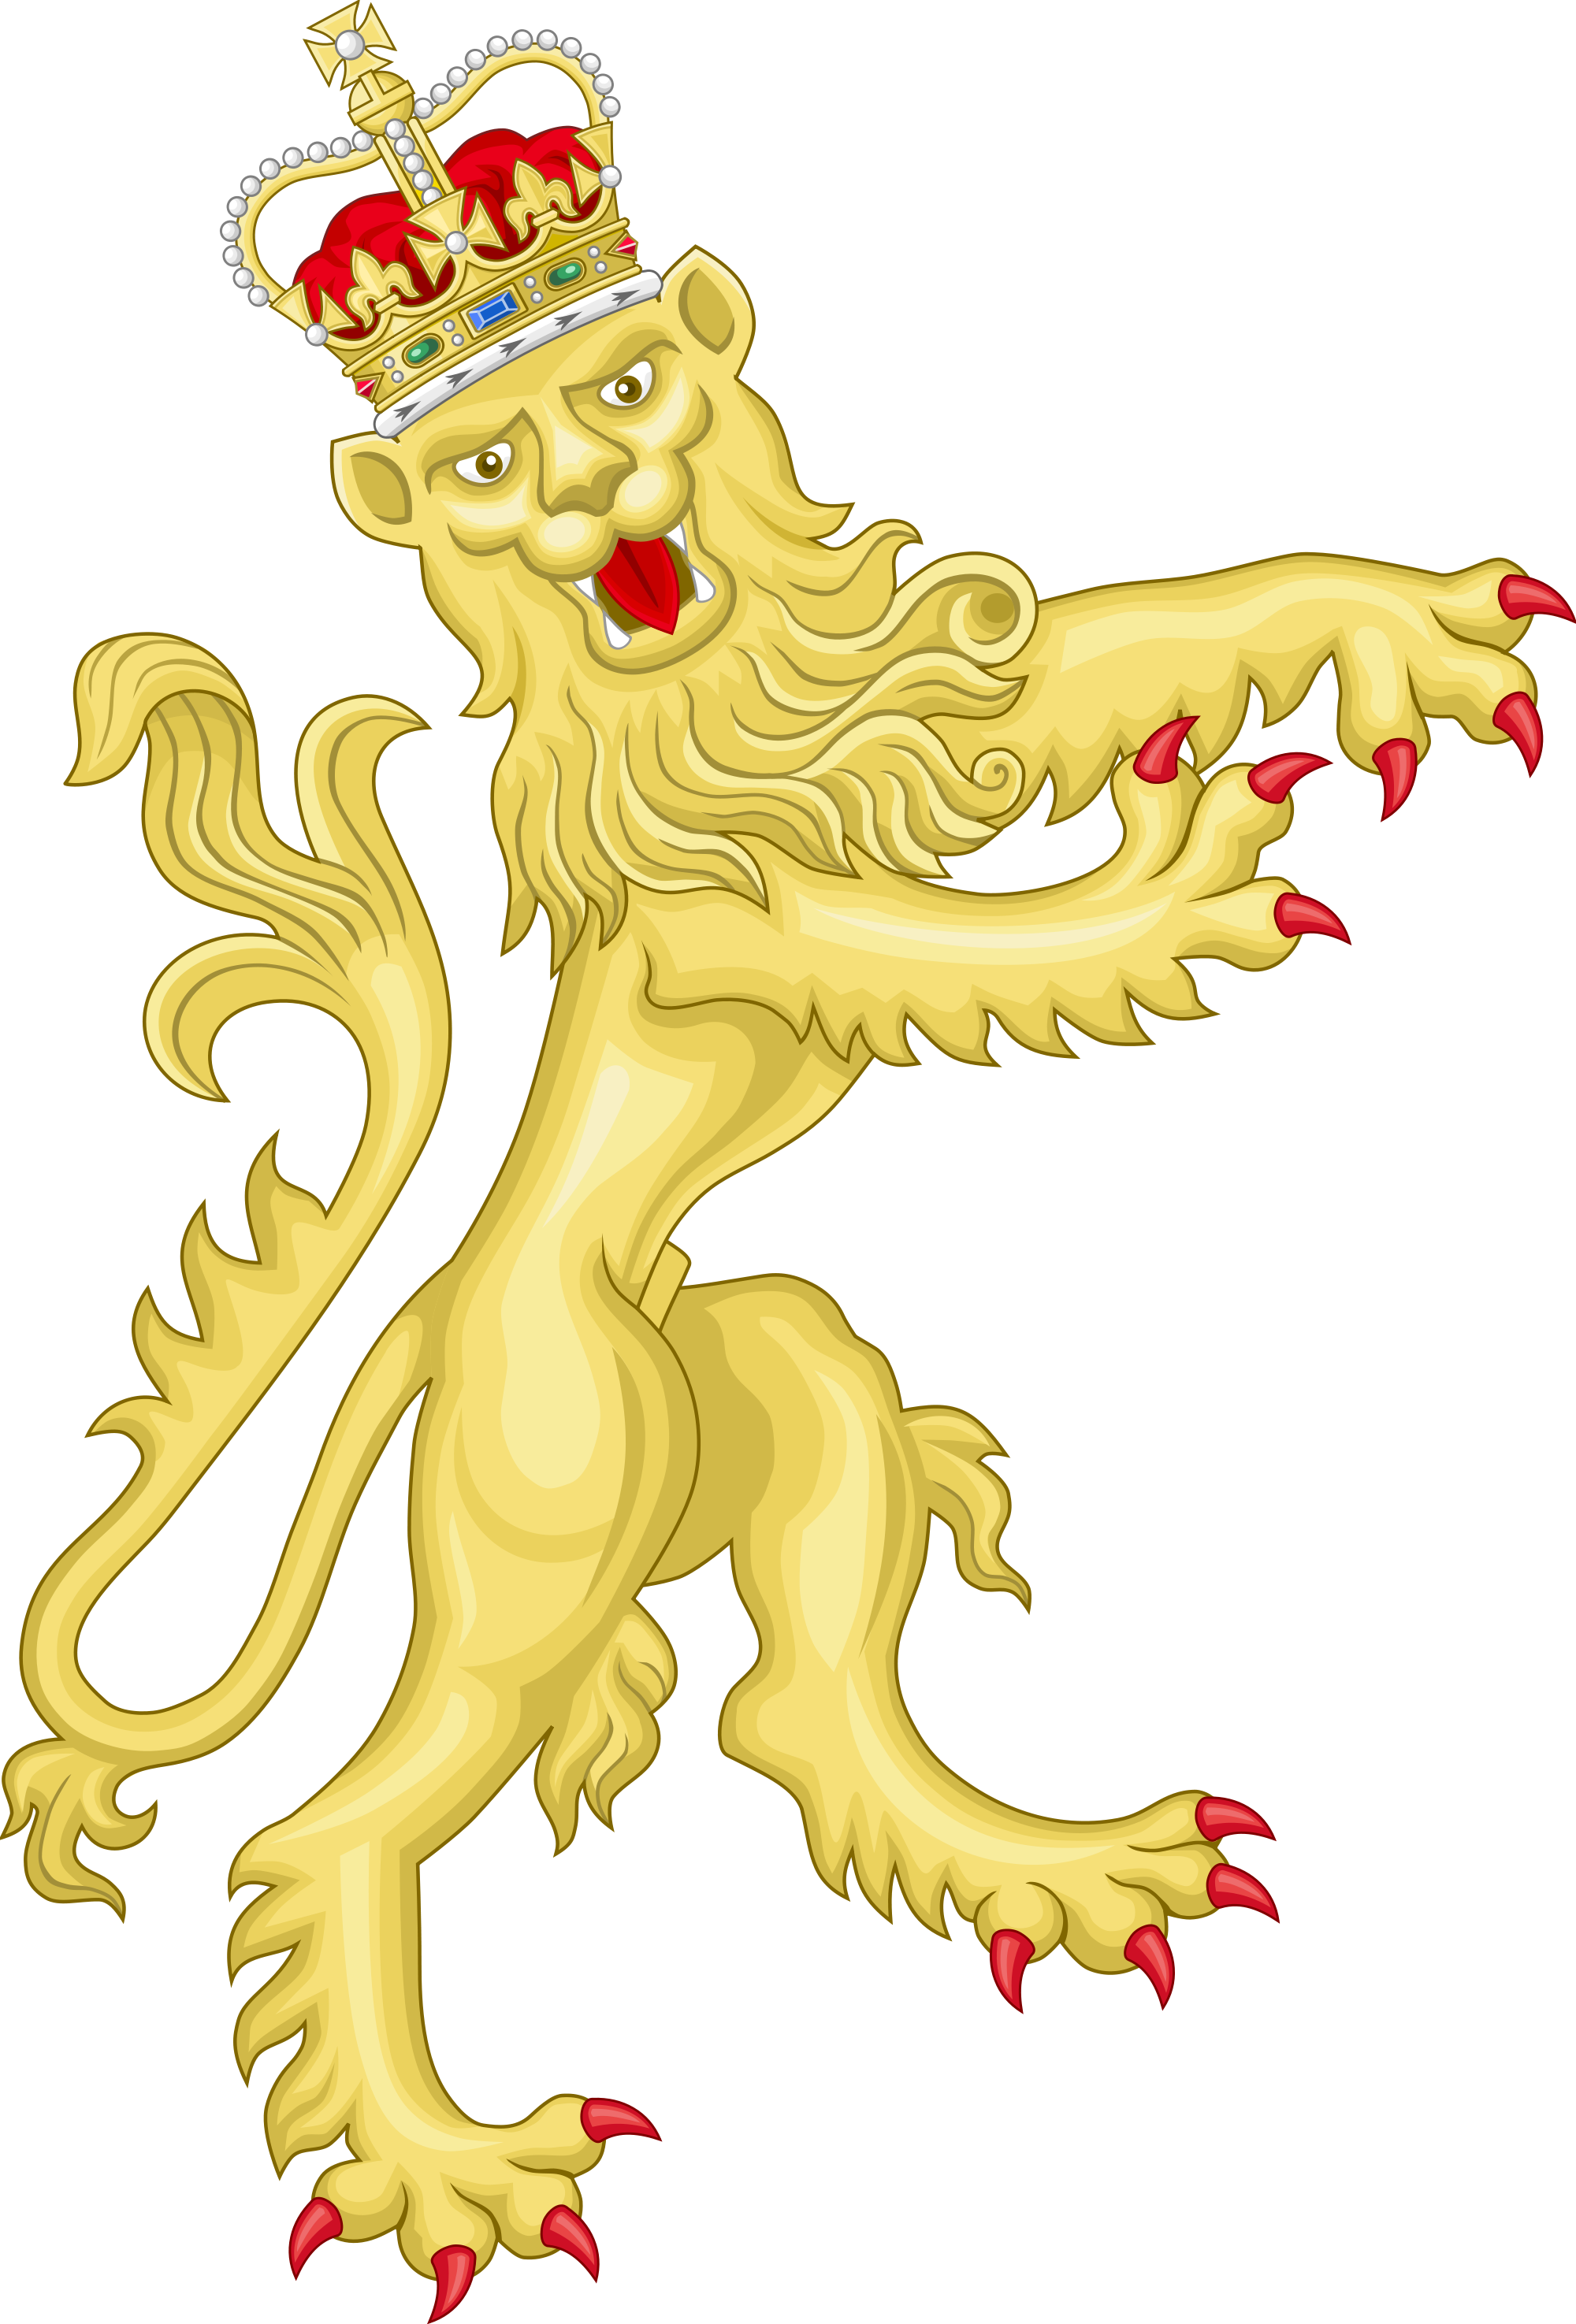 Cartoon Circus Lion Images - Royal Coat Of Arms (2000x2950)